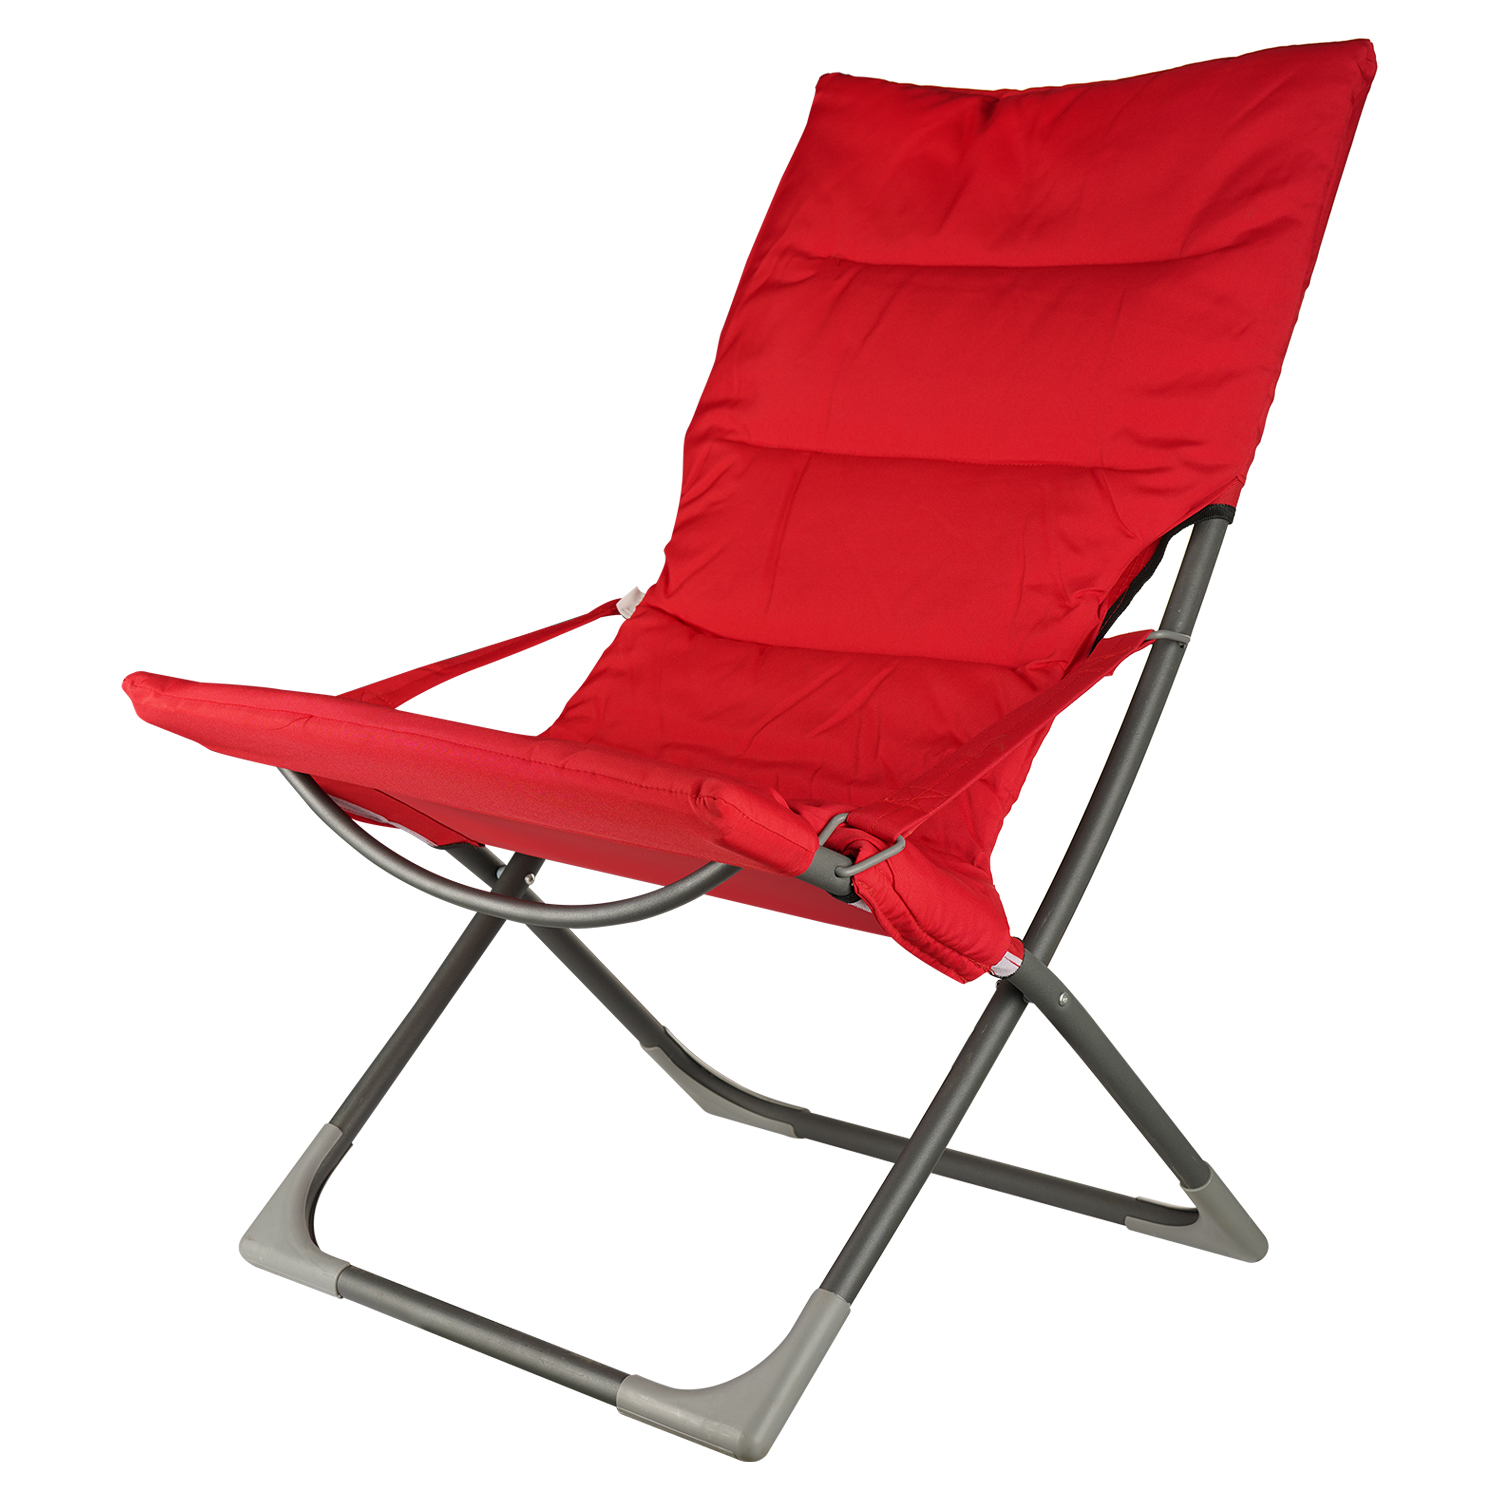 Кресло складное Market Union с подлокотниками 65х83х93 см красное - фото 1